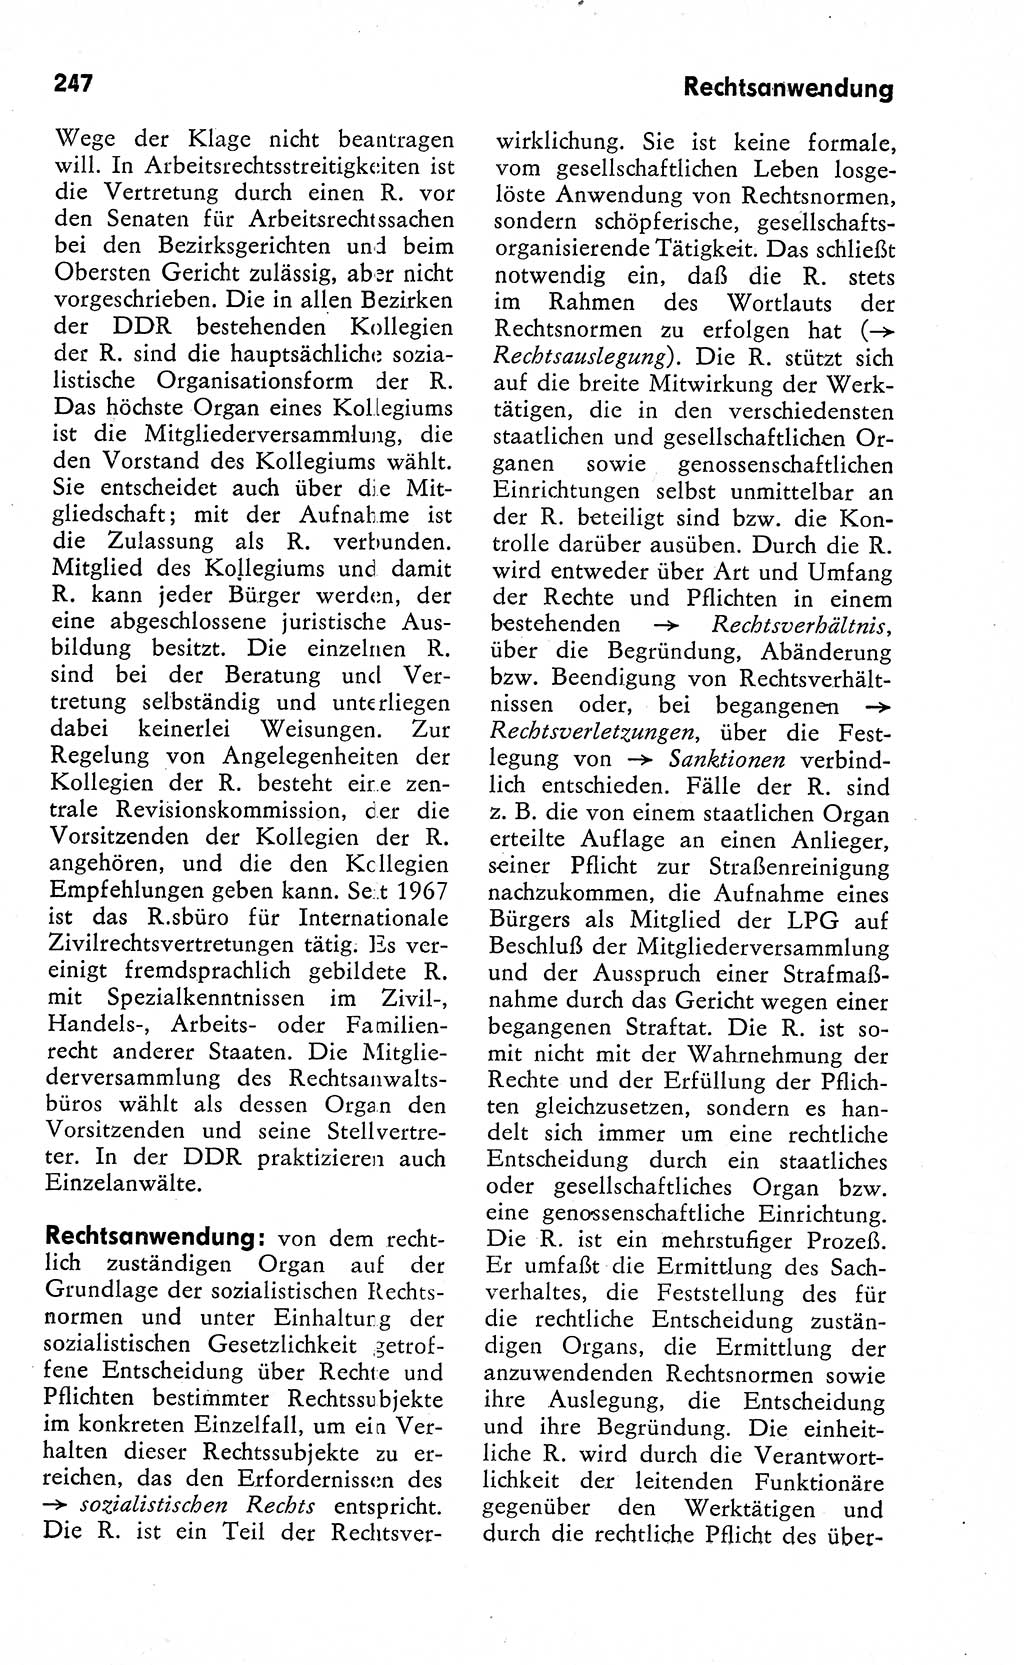 Wörterbuch zum sozialistischen Staat [Deutsche Demokratische Republik (DDR)] 1974, Seite 247 (Wb. soz. St. DDR 1974, S. 247)